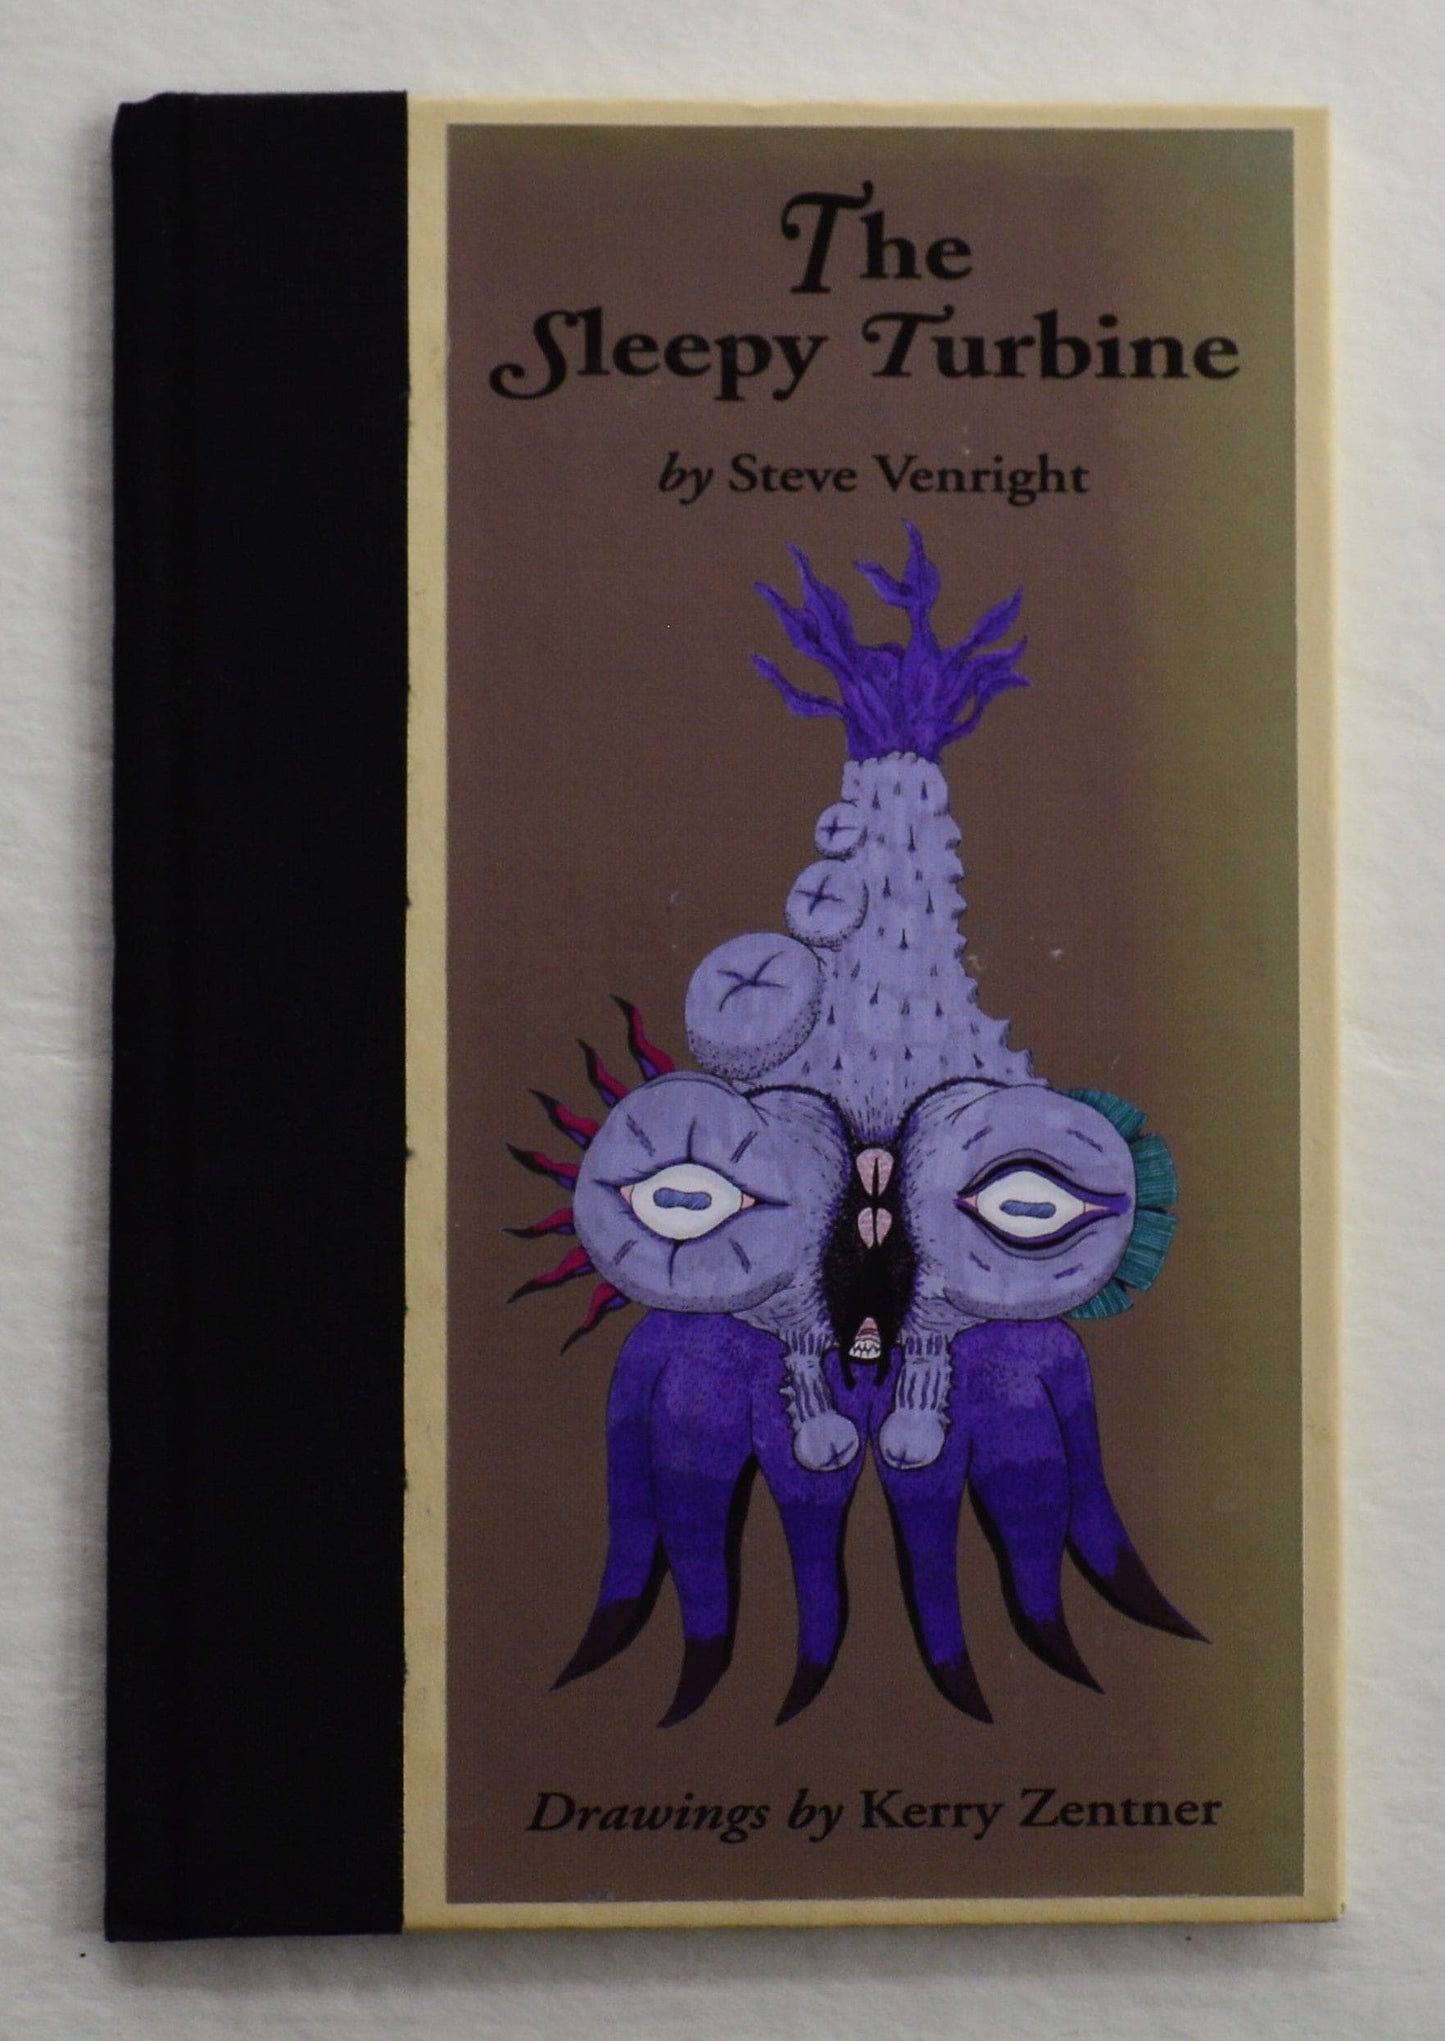 The Sleepy Turbine - Steve Venright/Drawings by Kerry Zentner